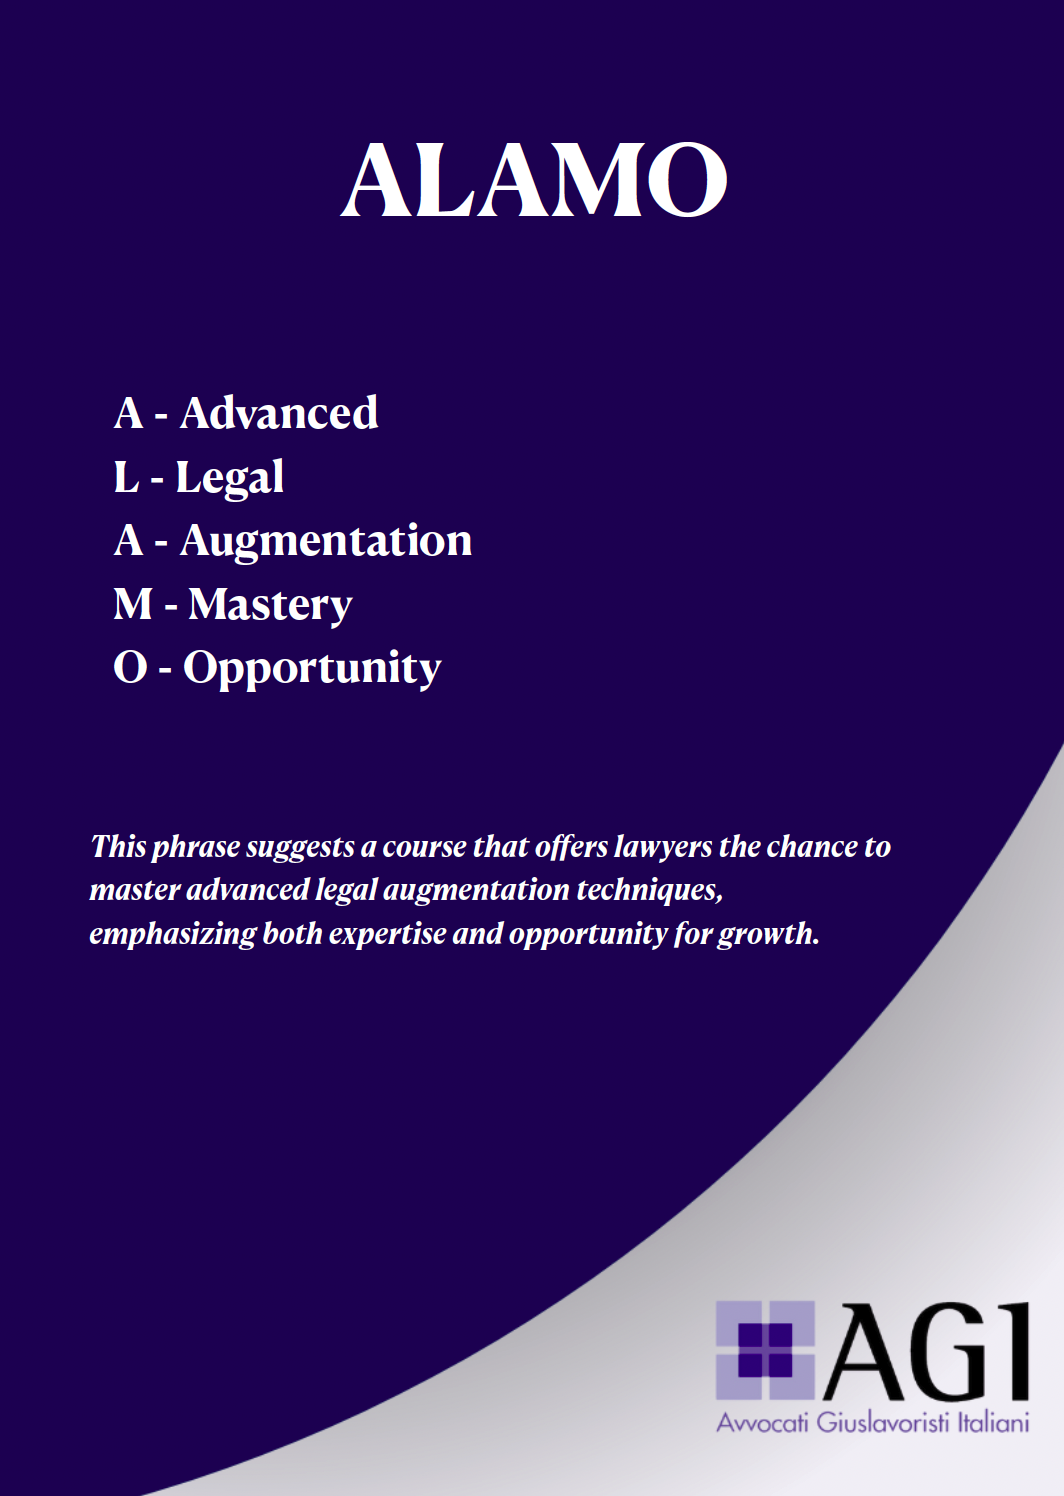 Proroga - Bando per la partecipazione al minimaster ALAMO ( Advanced Legal Augmentation Mastery Opportunity)